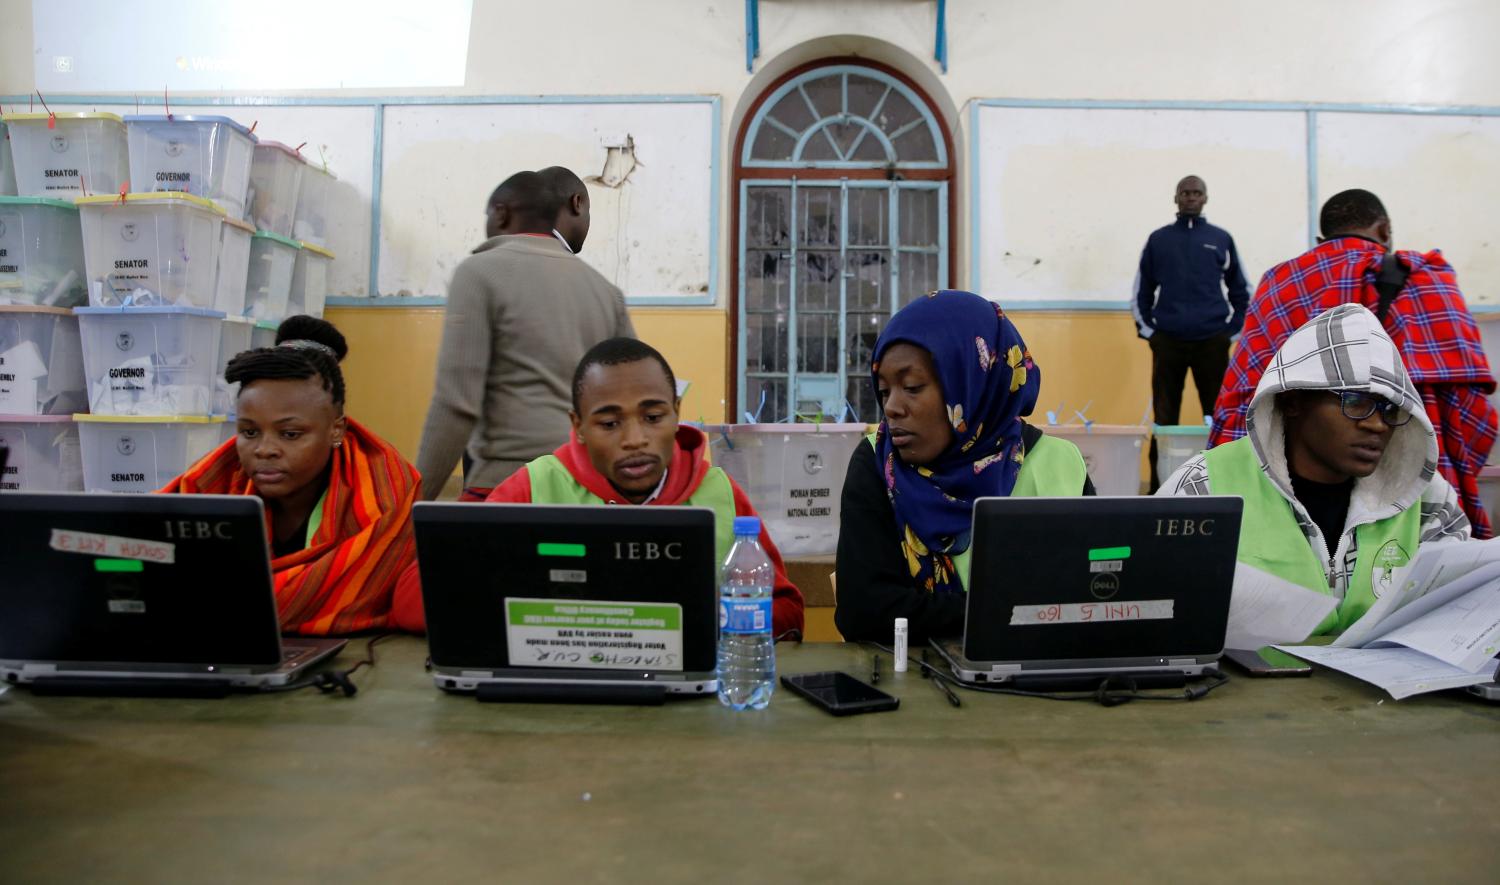 Election officials work at computers at a tallying center in Nairobi, Kenya.